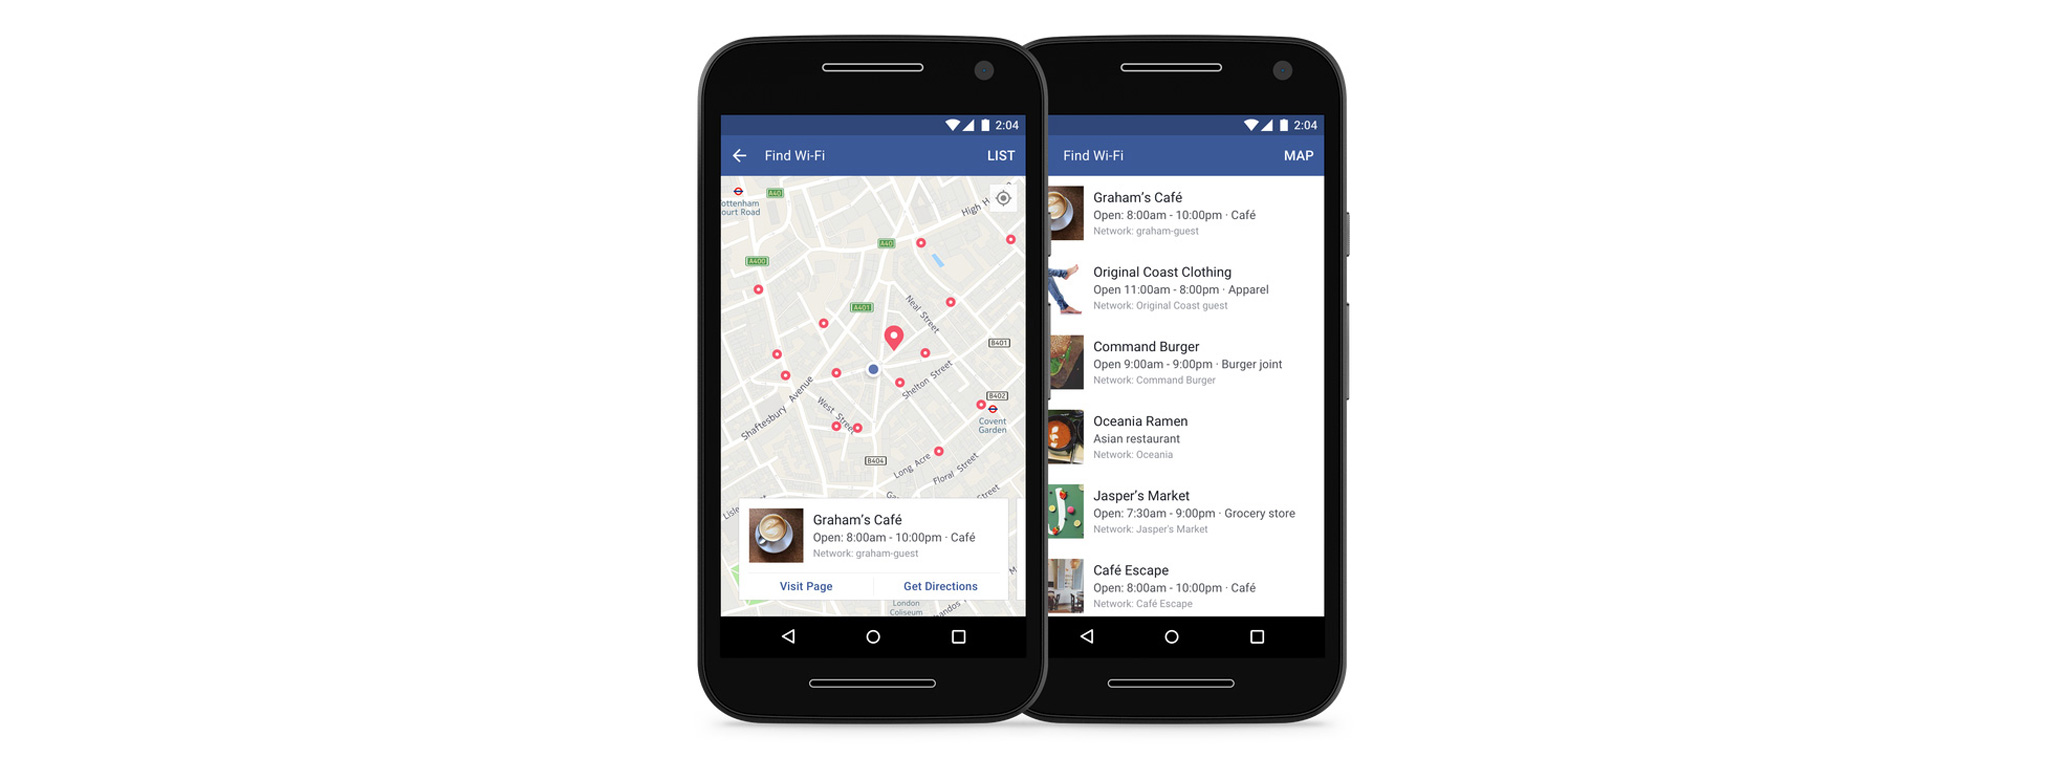 Facebook cập nhật tính năng "Tìm Wifi" xung quanh cho người dùng toàn cầu, hãy dùng thử